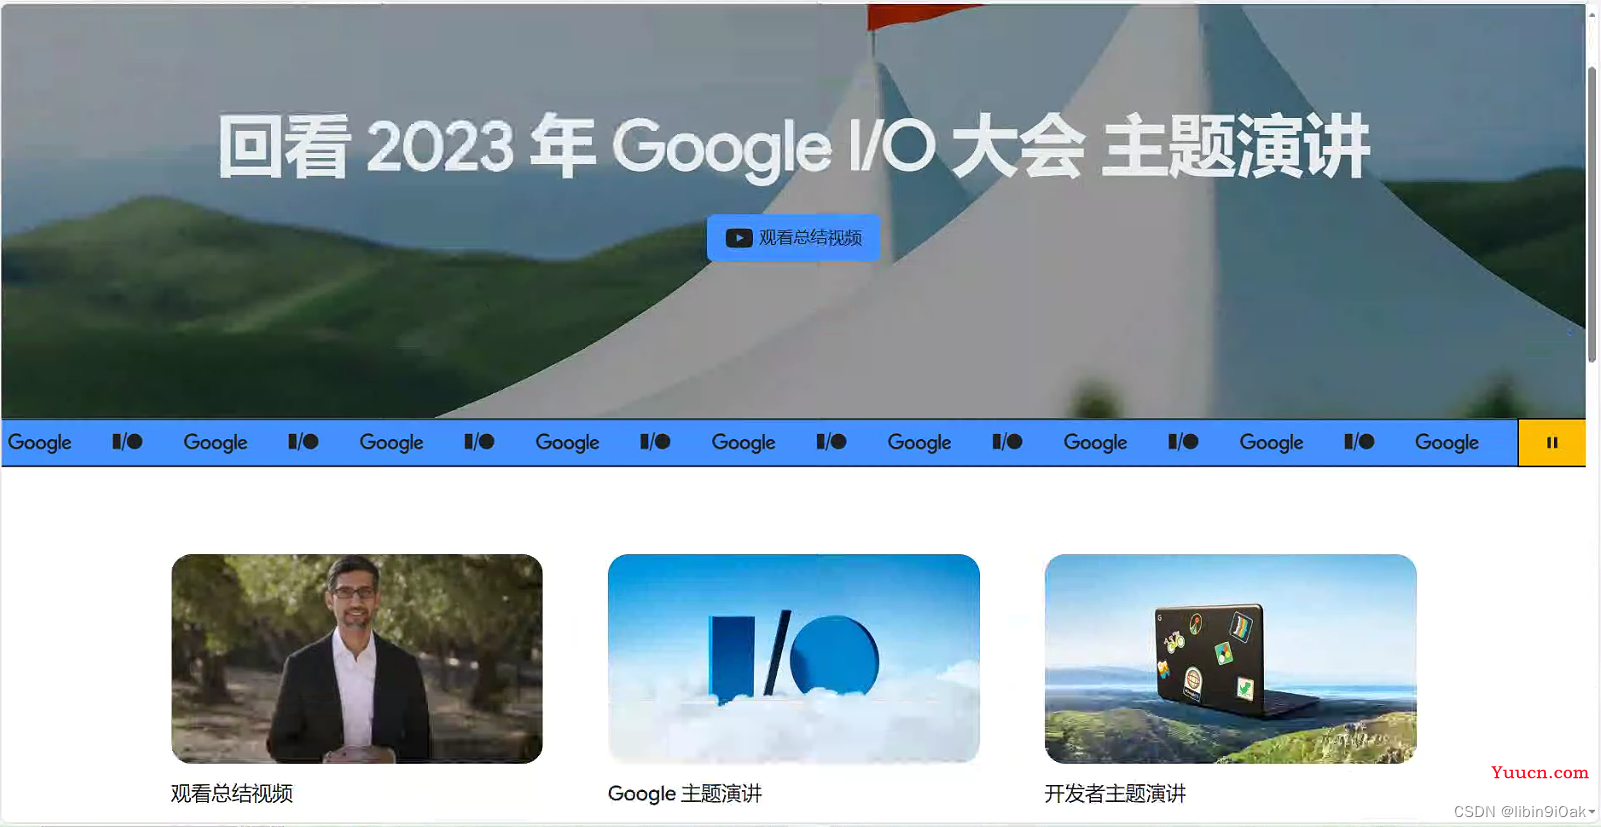 Google I/O 2023 大会上发布了一些令人兴奋的技术和产品，让我们一起来看看吧！